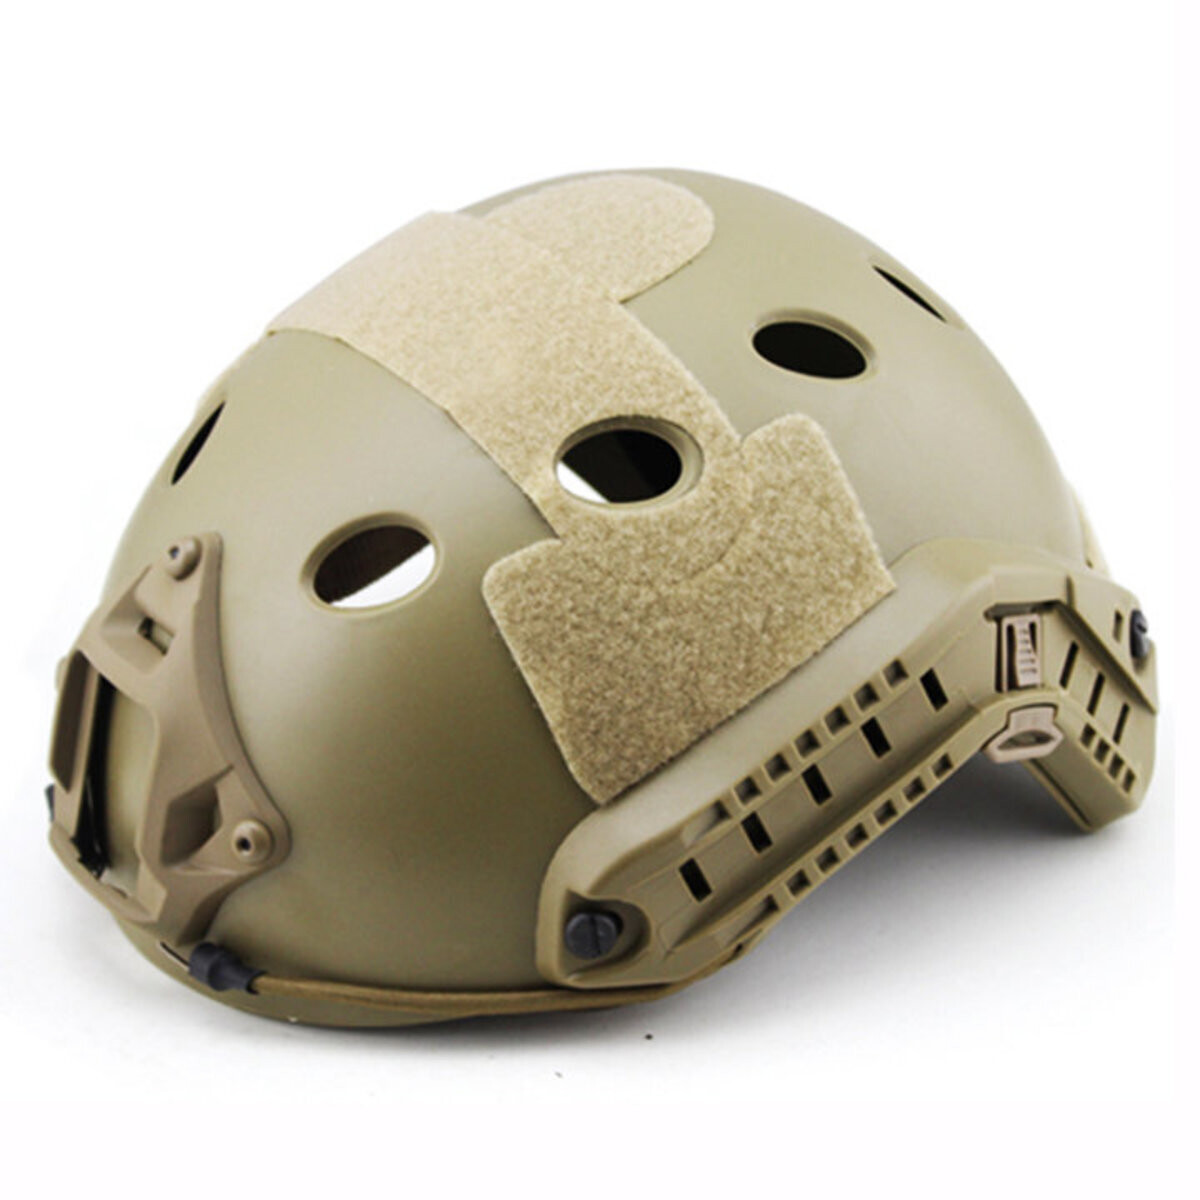 Valken ATH Enhanced Helmet - Tan